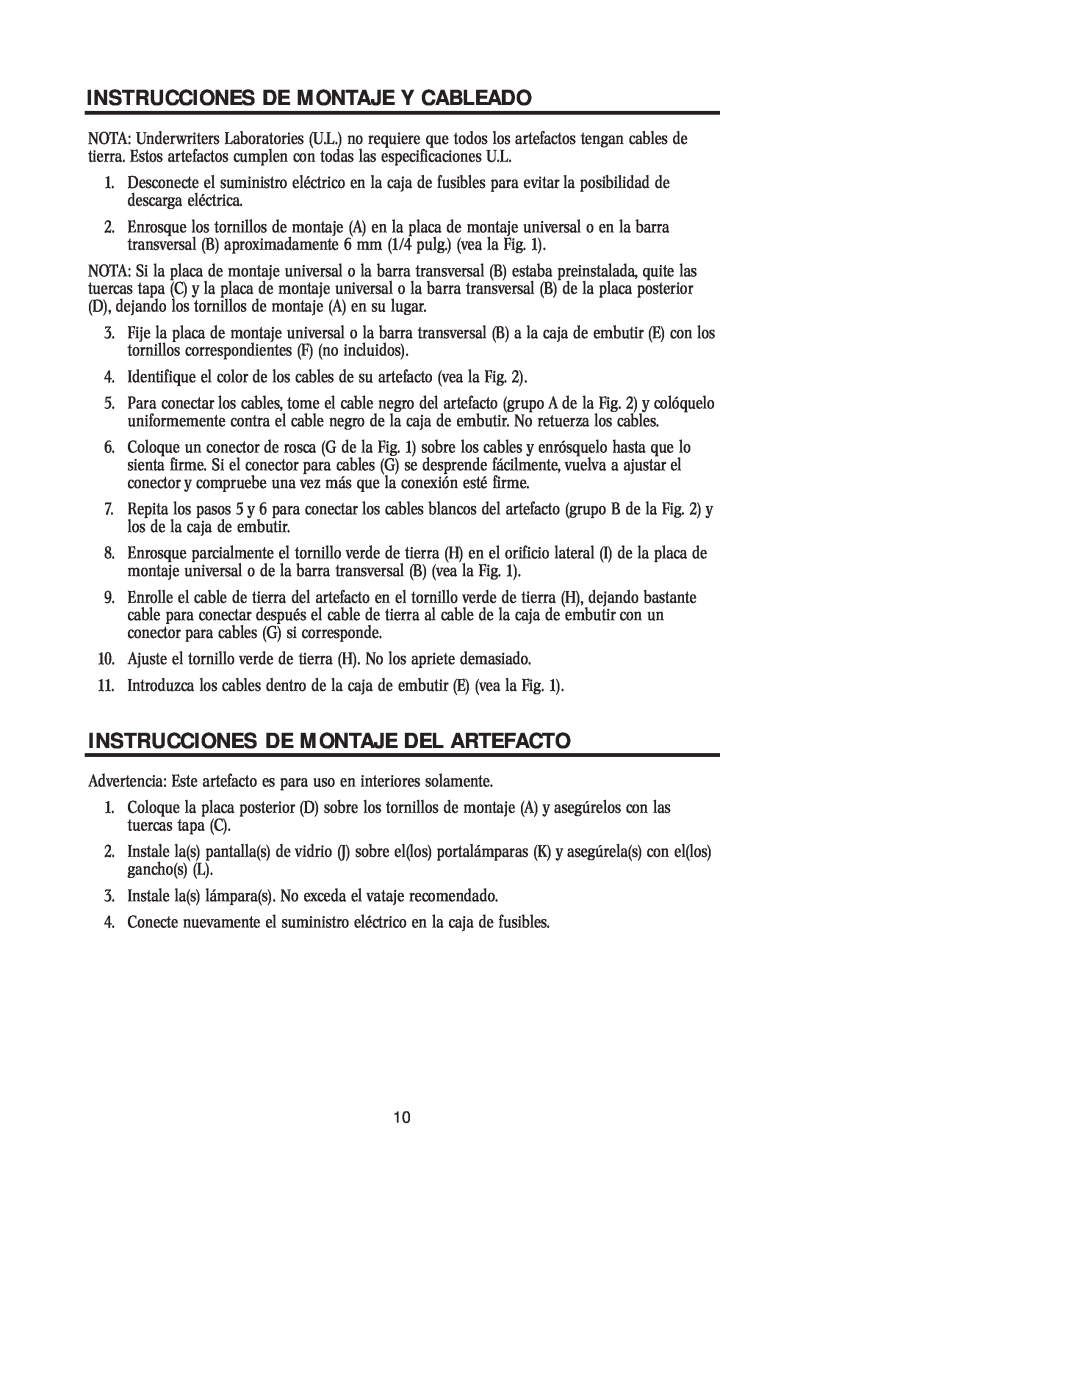 Westinghouse 81005 owner manual Instrucciones De Montaje Y Cableado, Instrucciones De Montaje Del Artefacto 